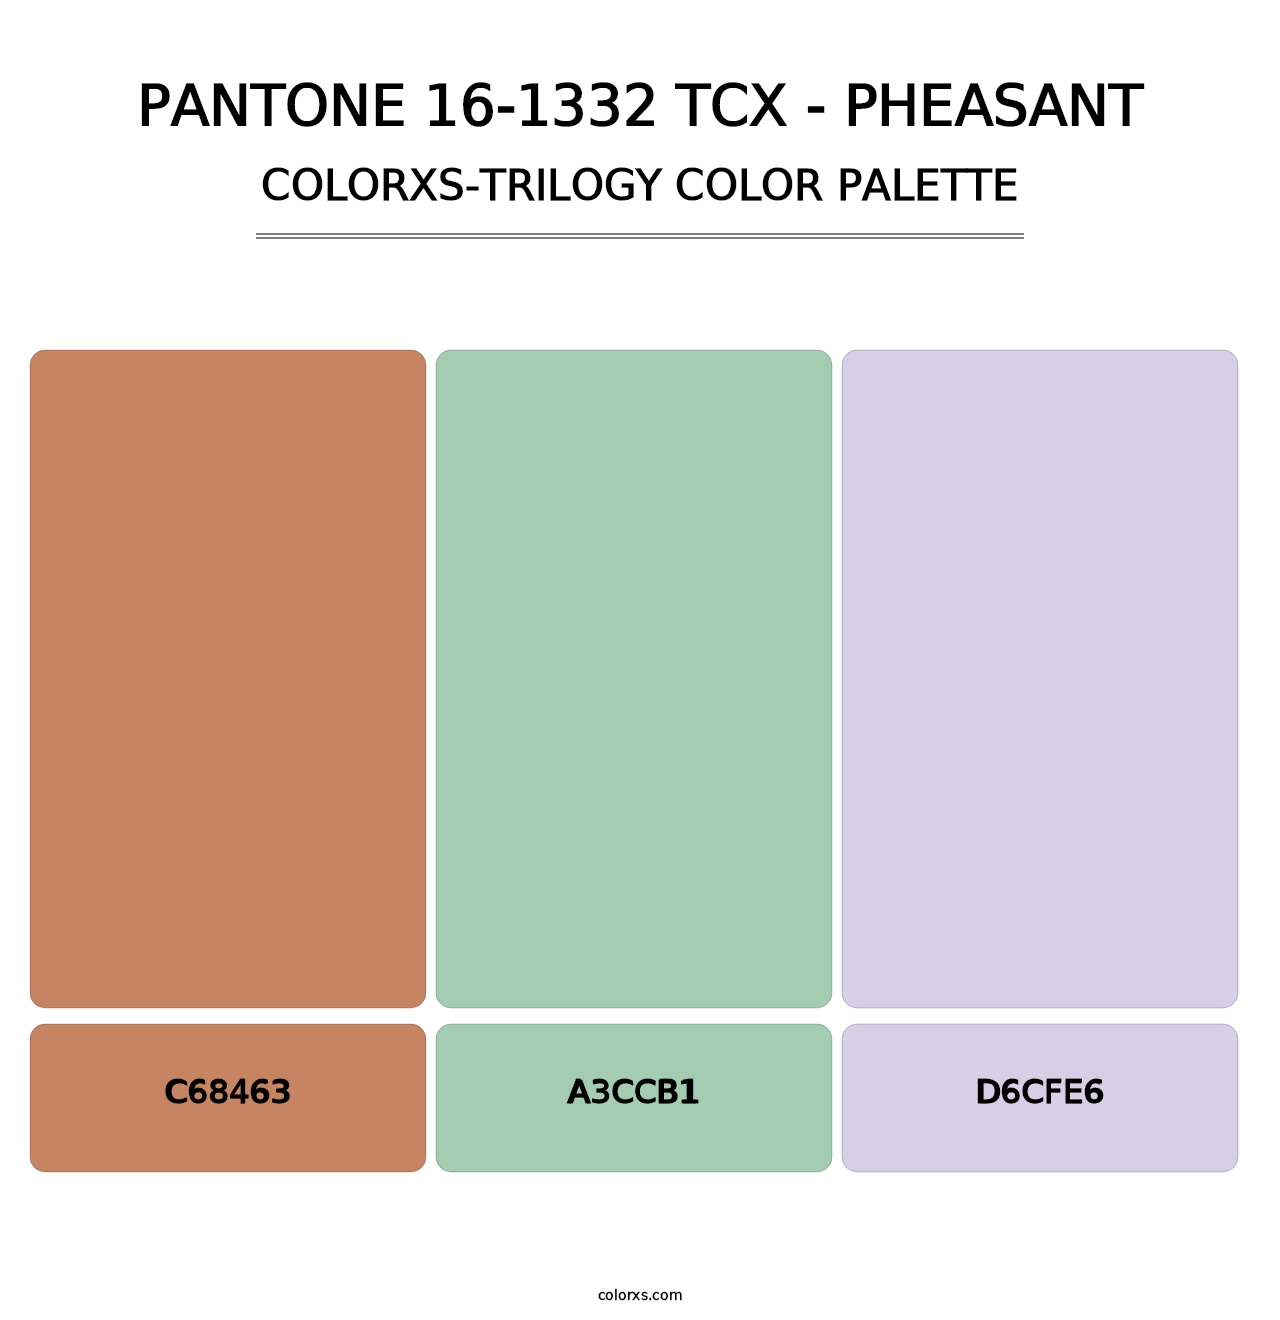 PANTONE 16-1332 TCX - Pheasant - Colorxs Trilogy Palette